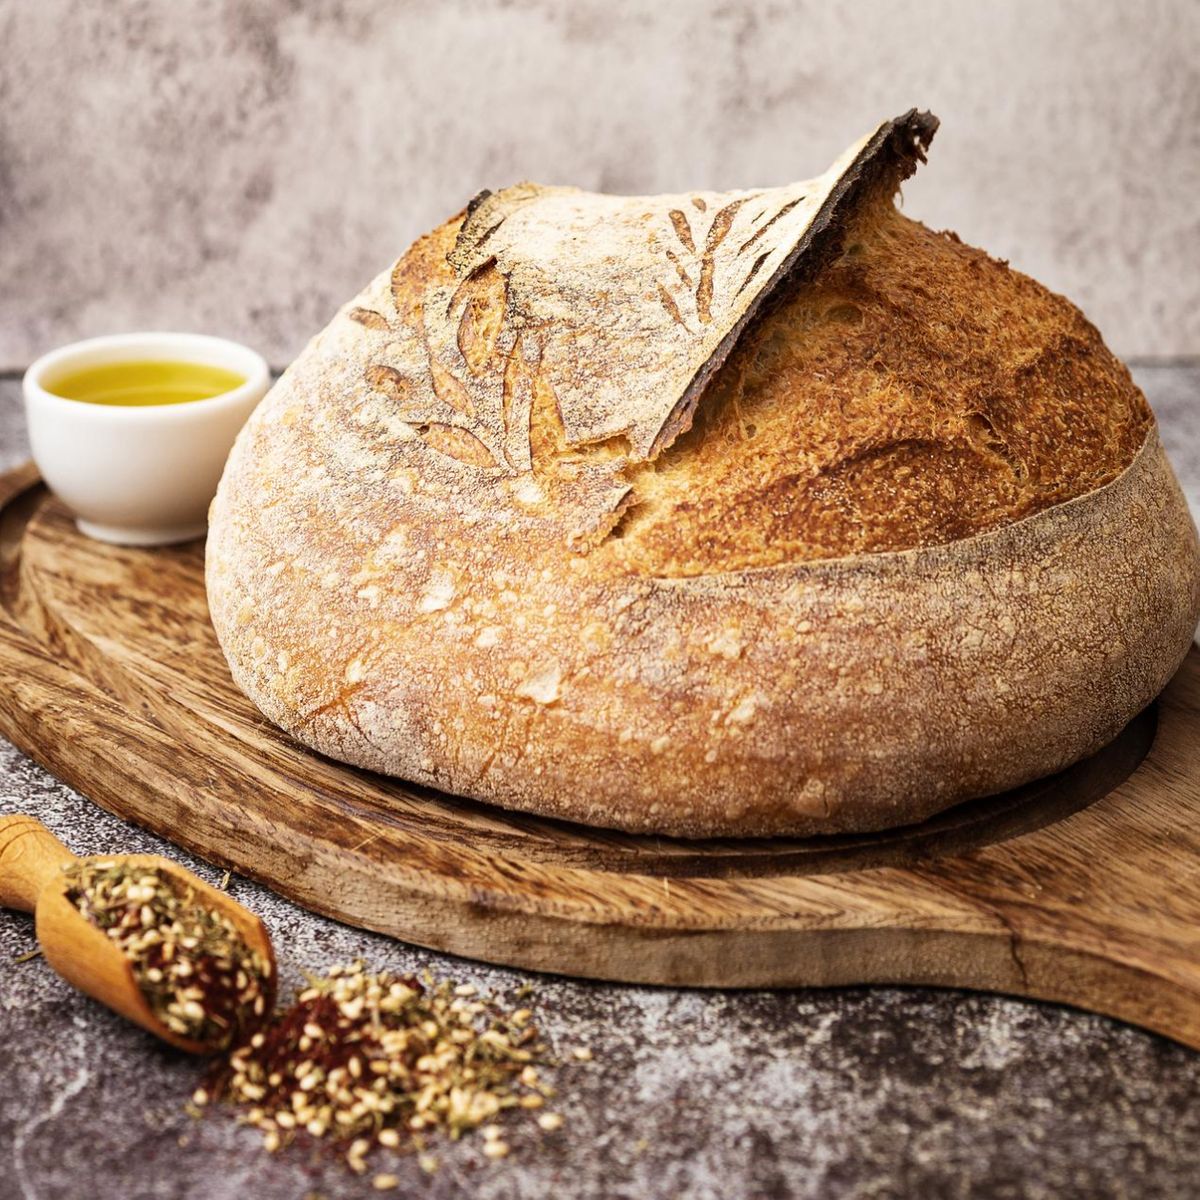 Günstig Brot backen: 4-Zutaten-Rezept von Jamie Oliver